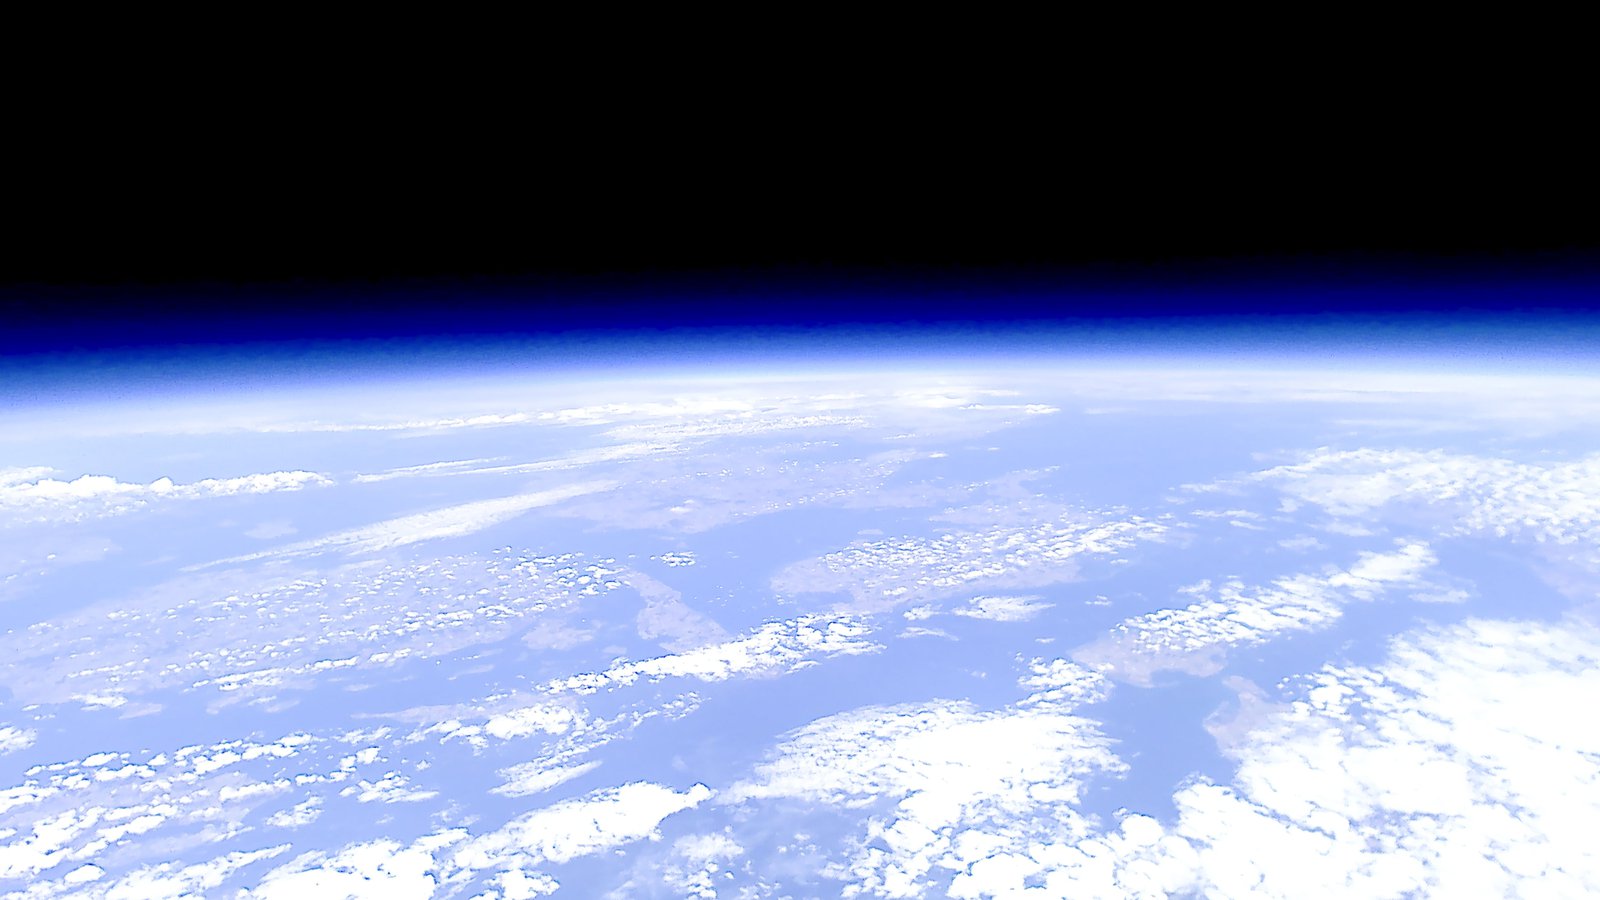 Die Erde abgebildet aus dem Weltall, man sieht leicht bläulich schimmernd die Atmosphäre.